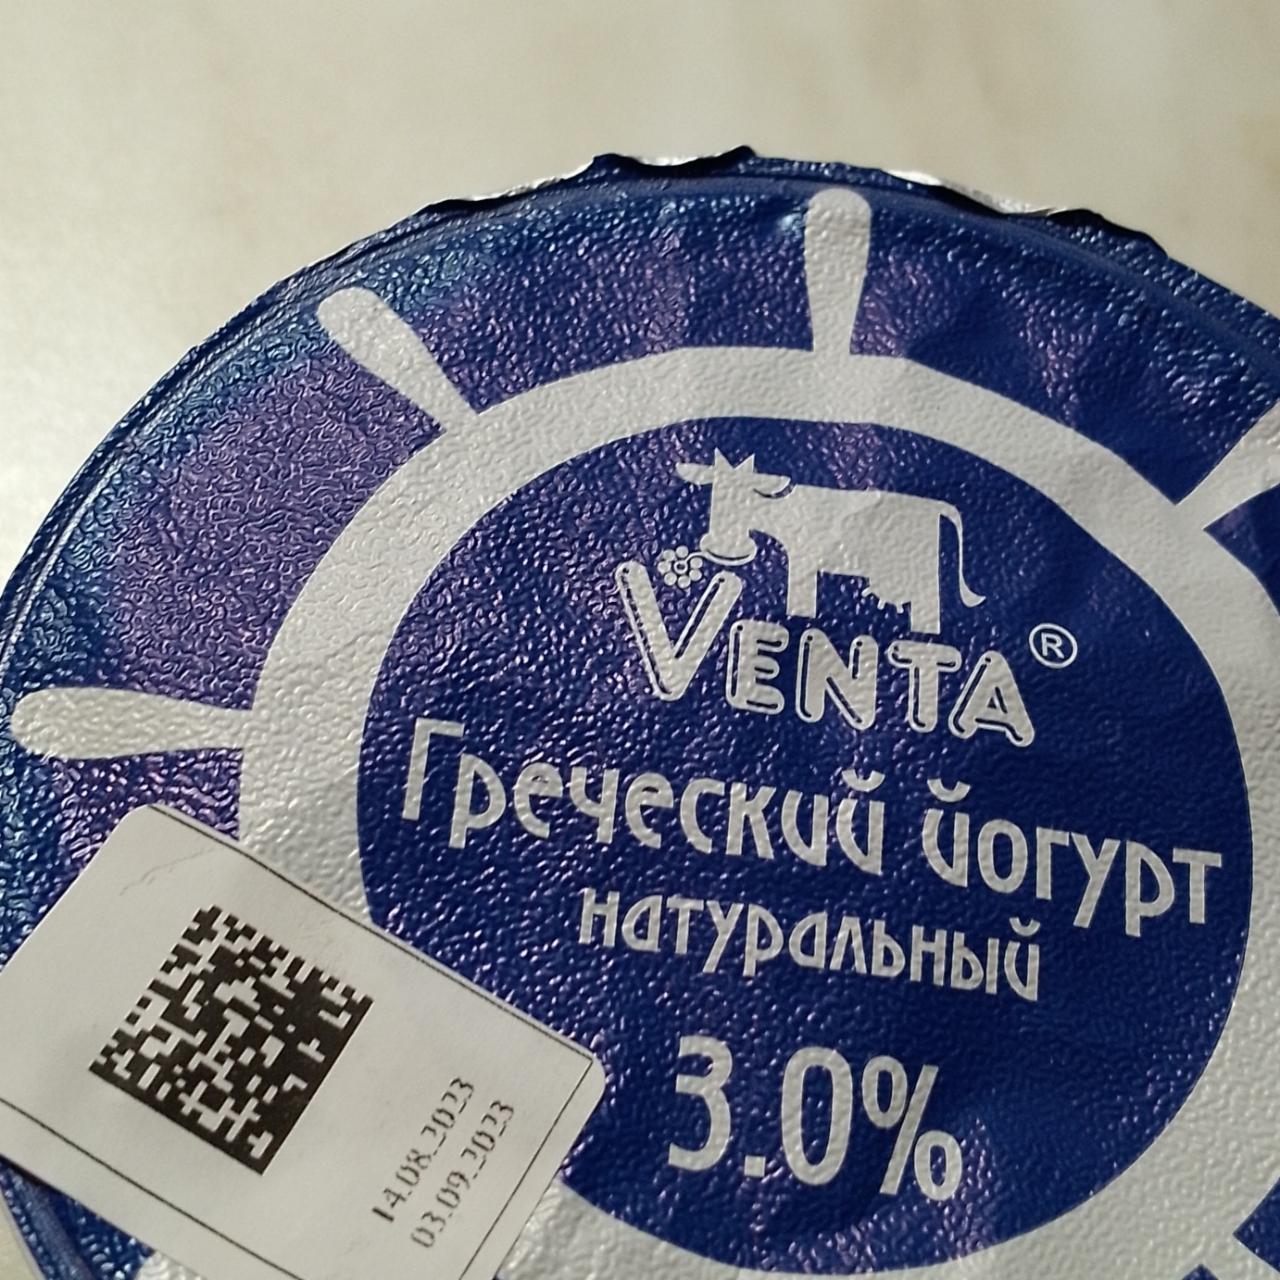 Фото - Греческий йогурт натуральный 3% VENTA